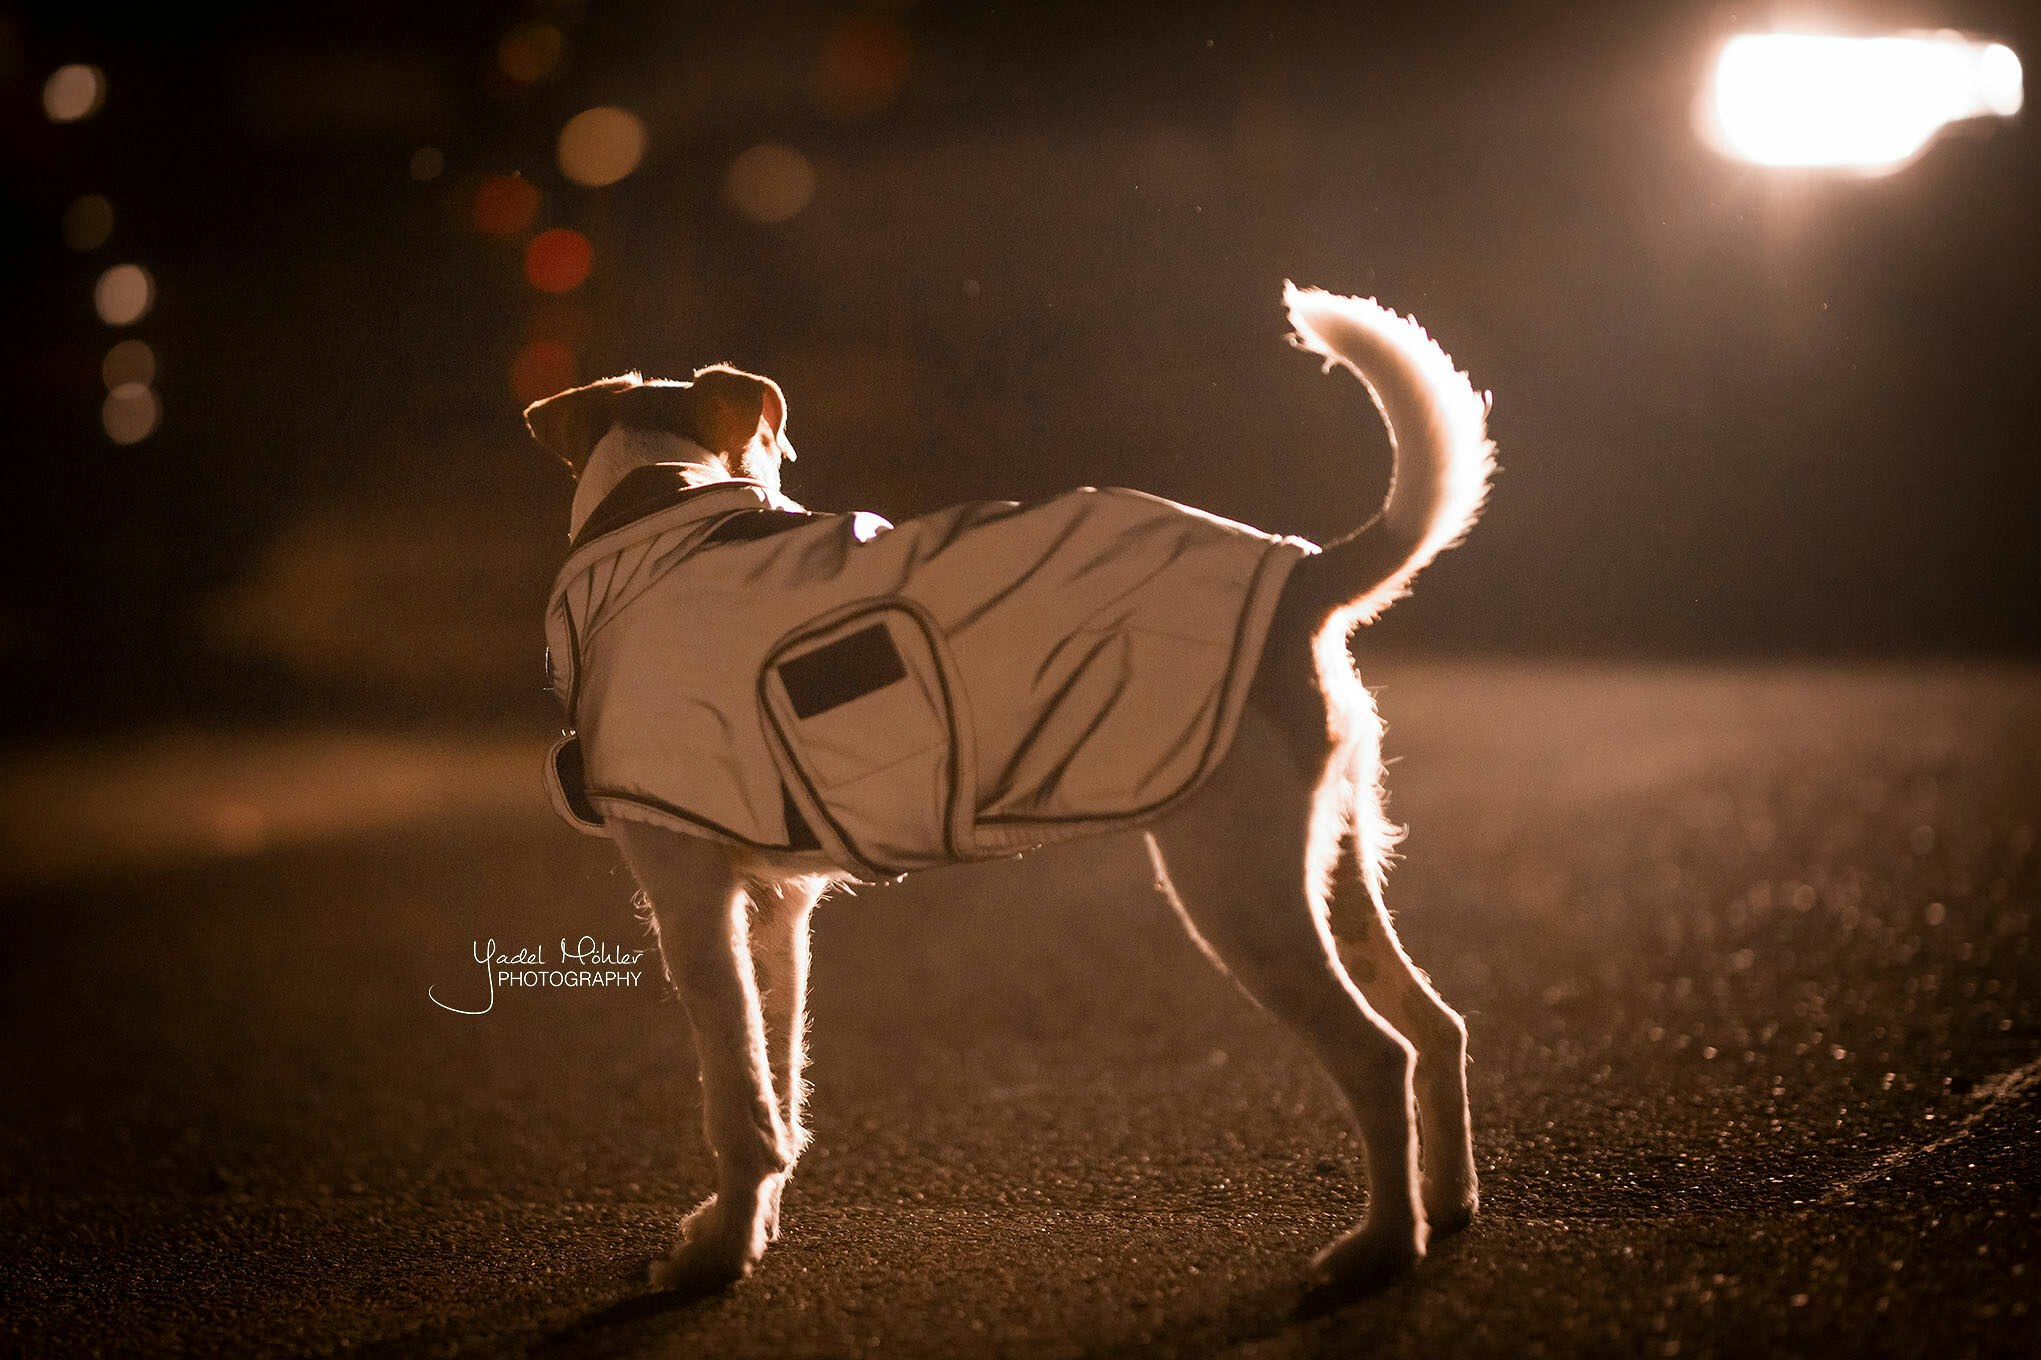 Kentucky Dogwear Dog Coat Reflective